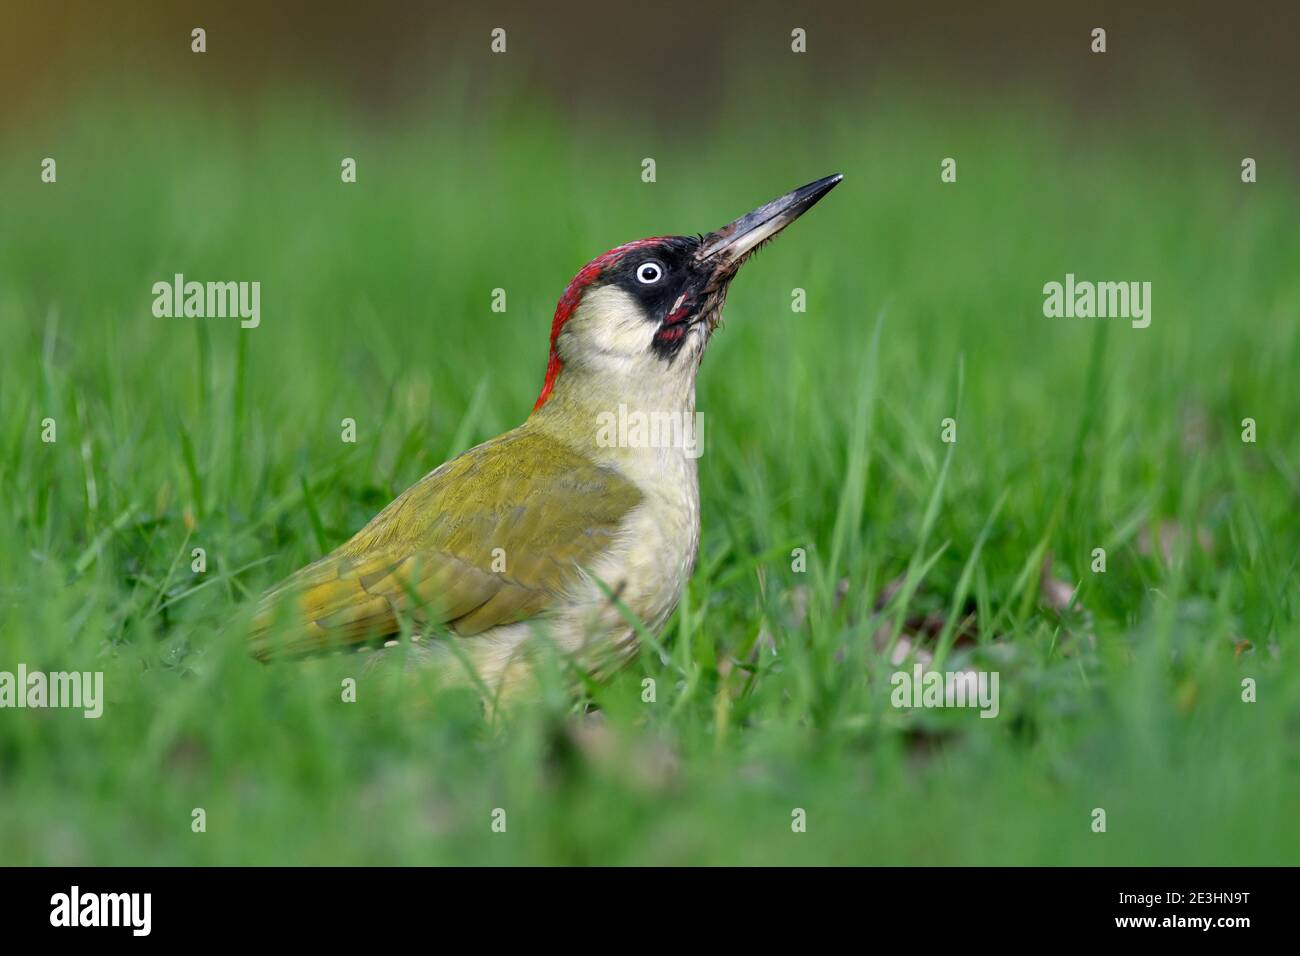 Green Woodpecker (Picus viridis) femelle et mâle debout sur un sol herbacé, pays de Galles, novembre Banque D'Images